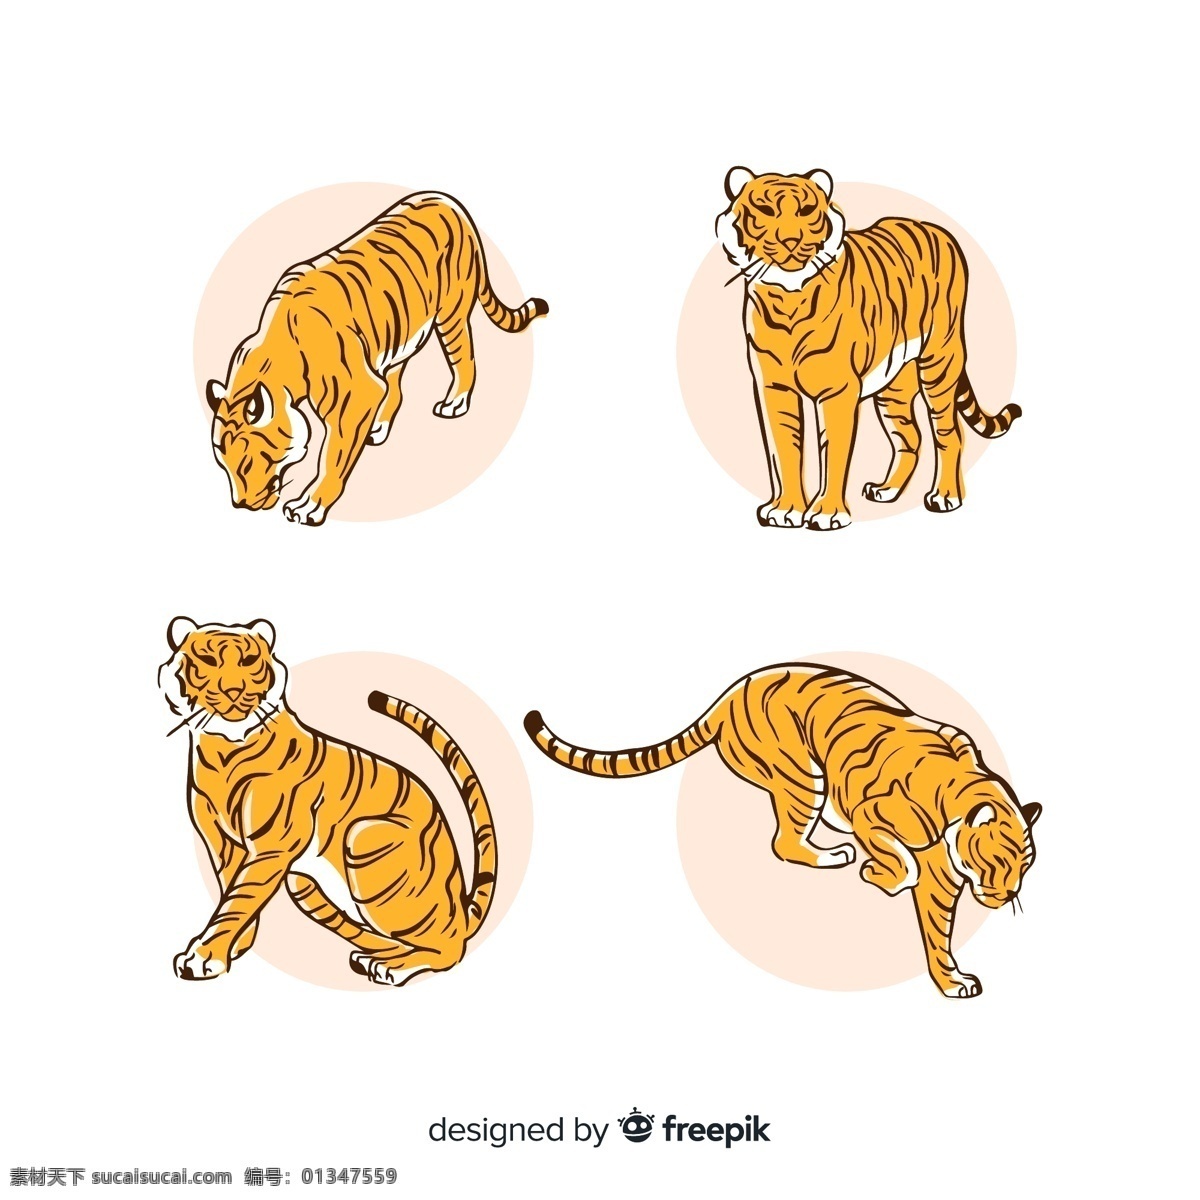 4款手绘 老虎设计 矢量素材 手绘 老虎 动物 矢量图 ai格式